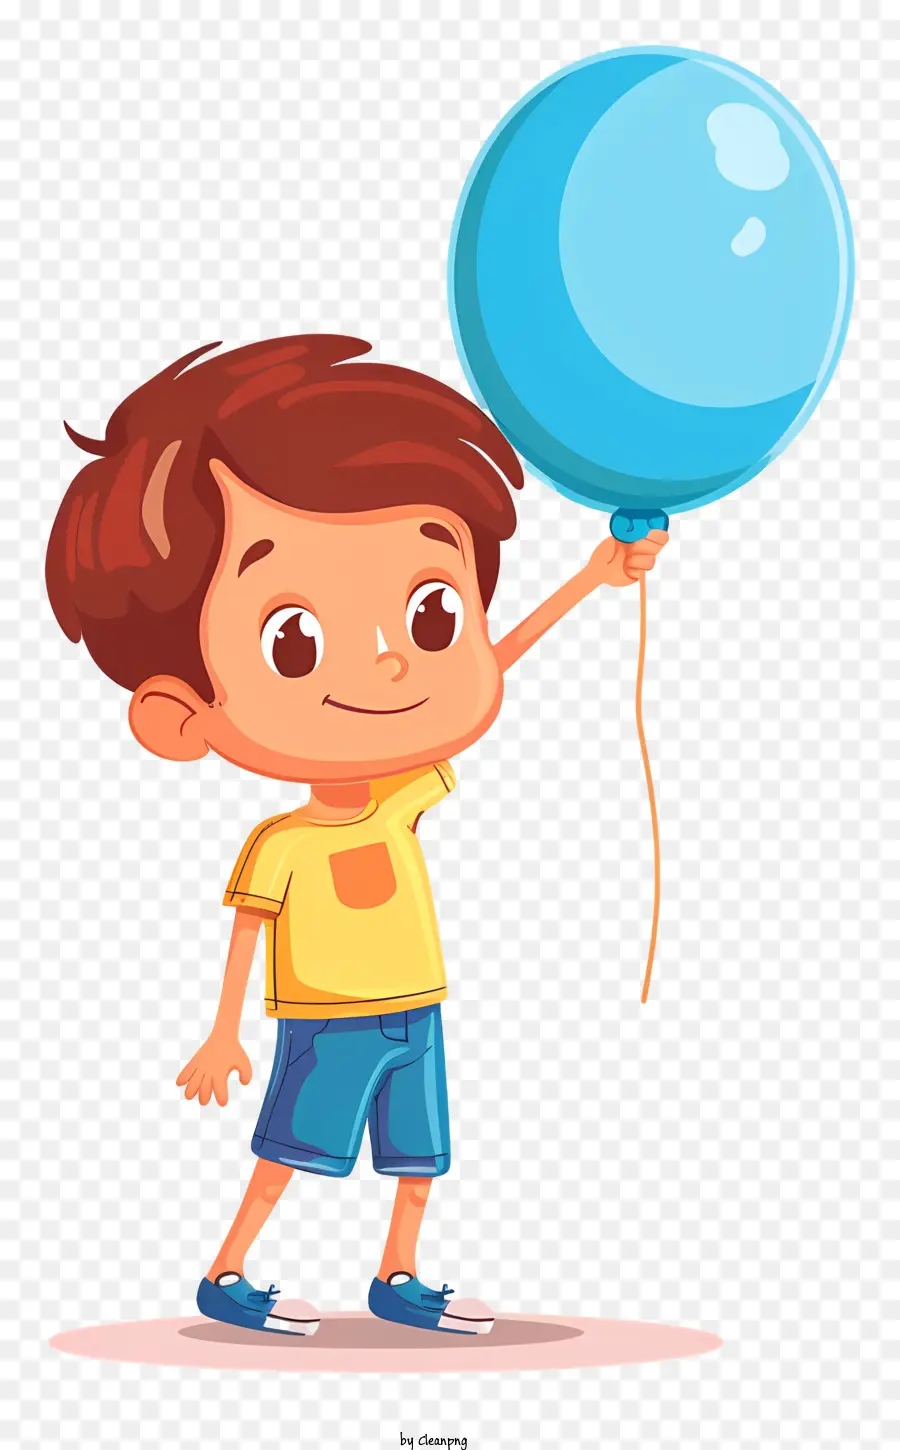 Junge hält einen Ballon Kinderballon Freude Aufregung - Junger Junge hebt aufgeregt Blue Ballon